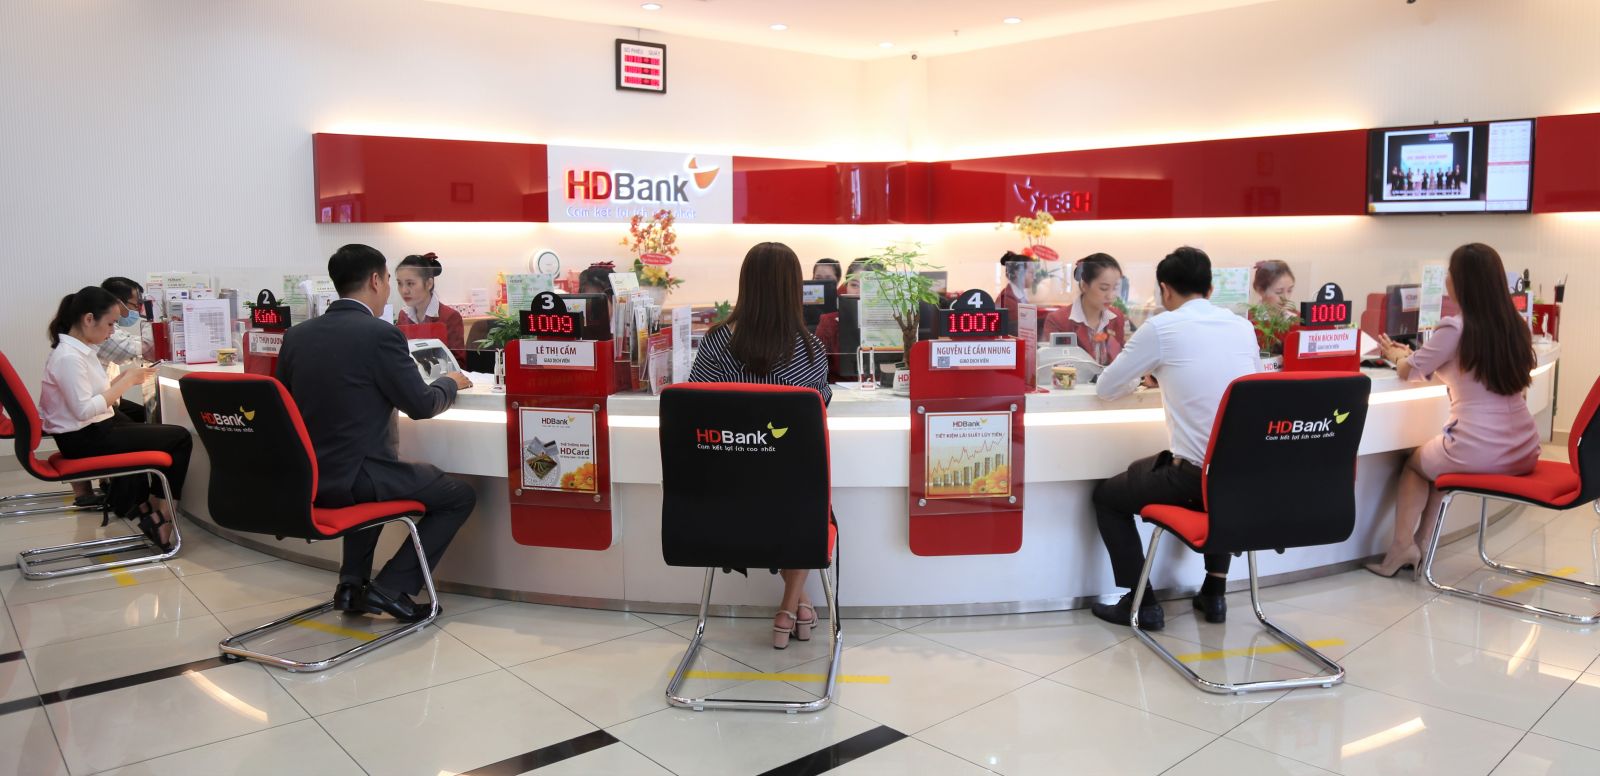 HDBank hiện nay là ngân hàng thuộc nhóm dẫn đầu Việt Nam, tiên phong trong chuyển đổi số và đang vươn ra quốc tế.